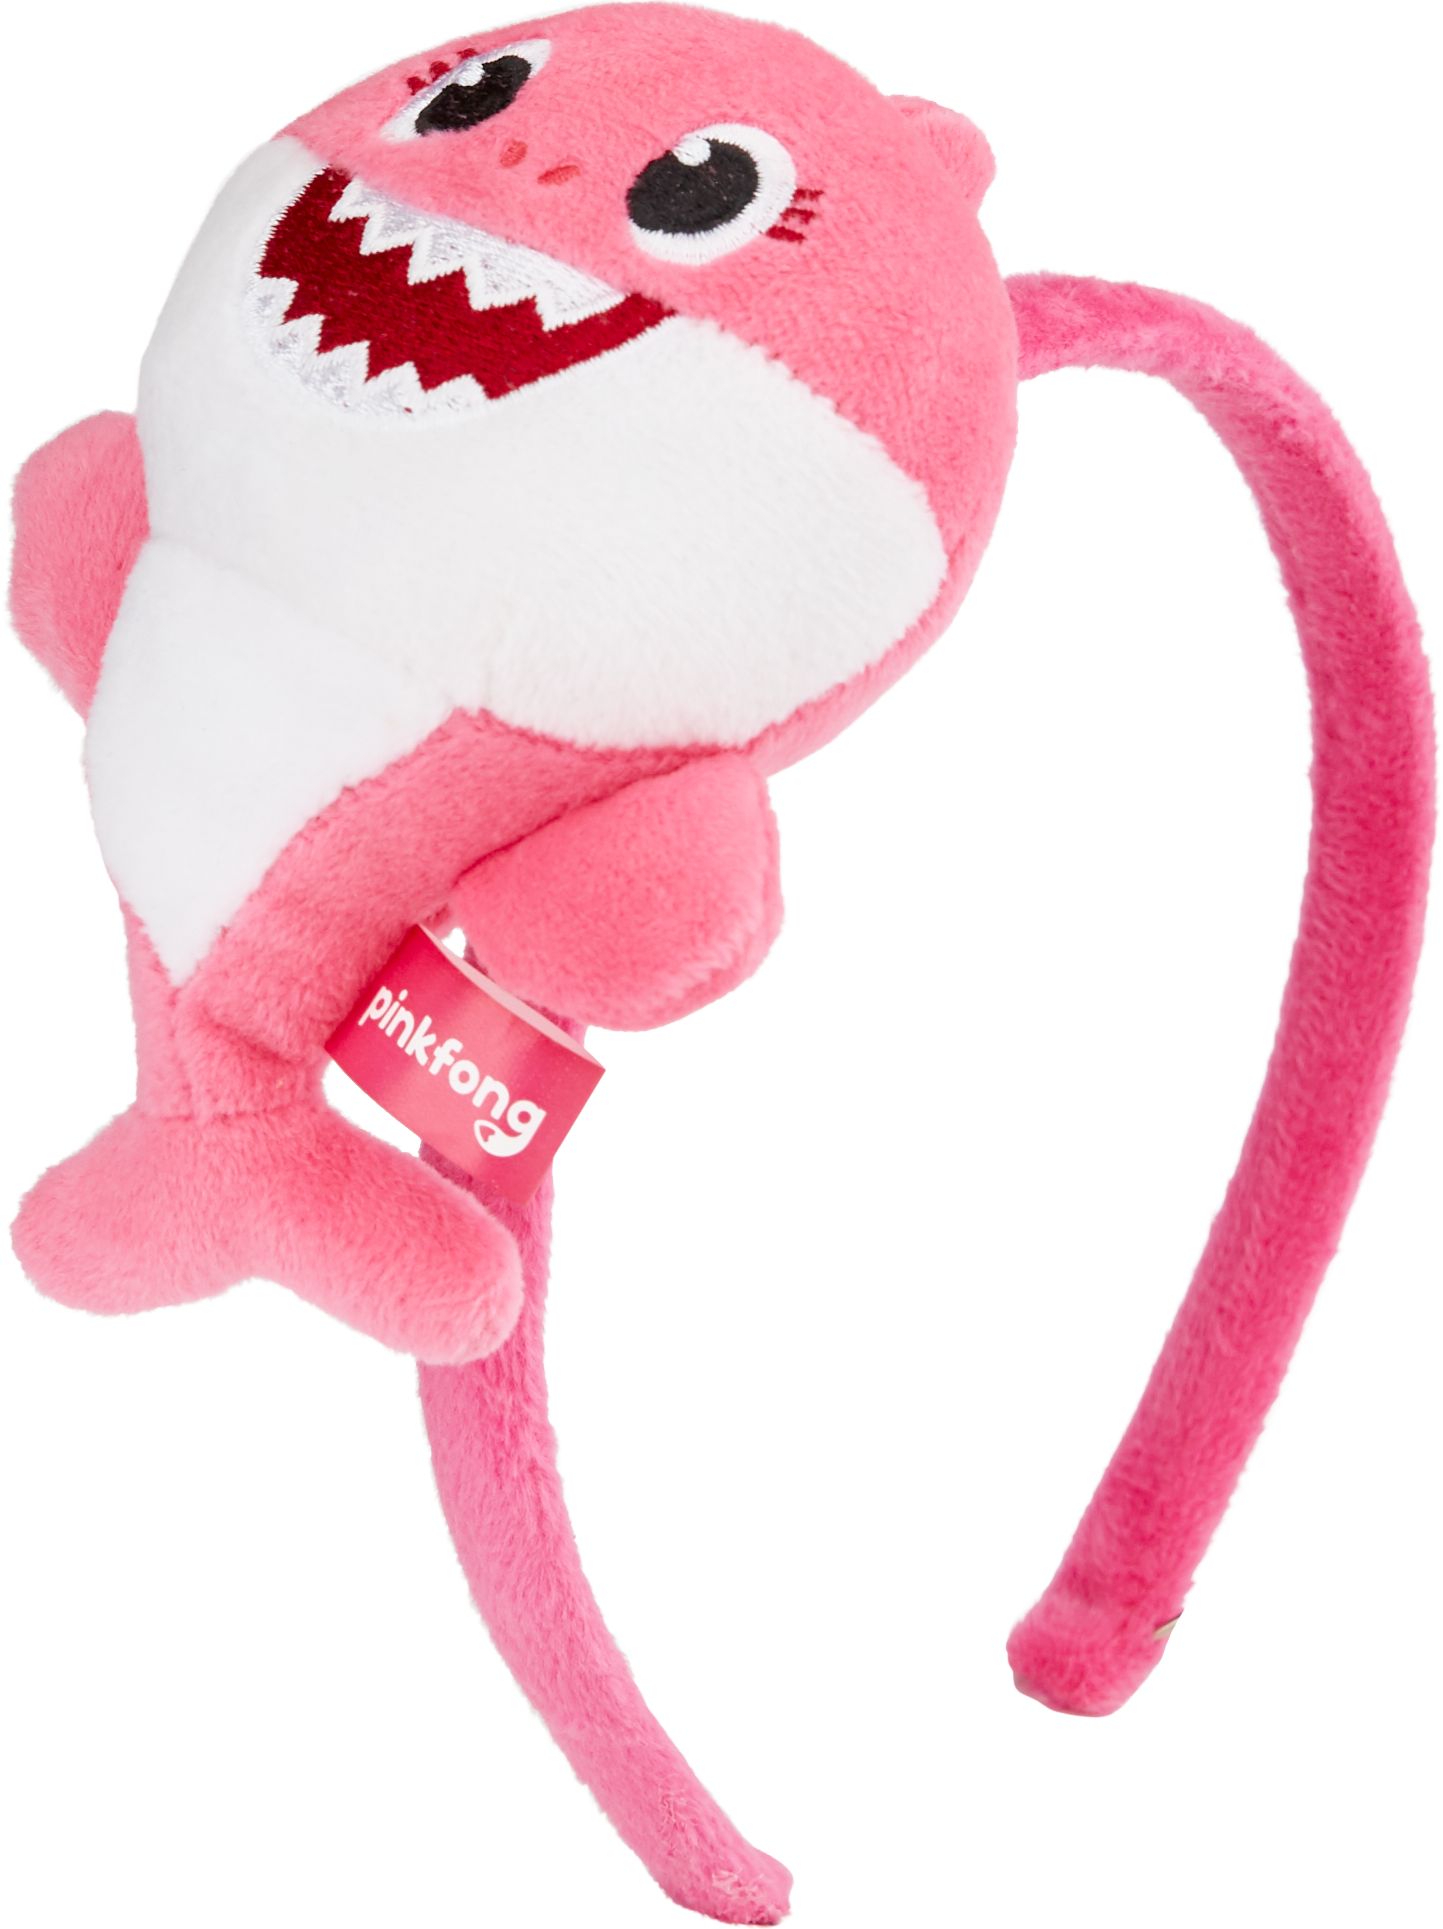 Baby Shark Singing Plush Headband, Blue/White, One Size, Wearable